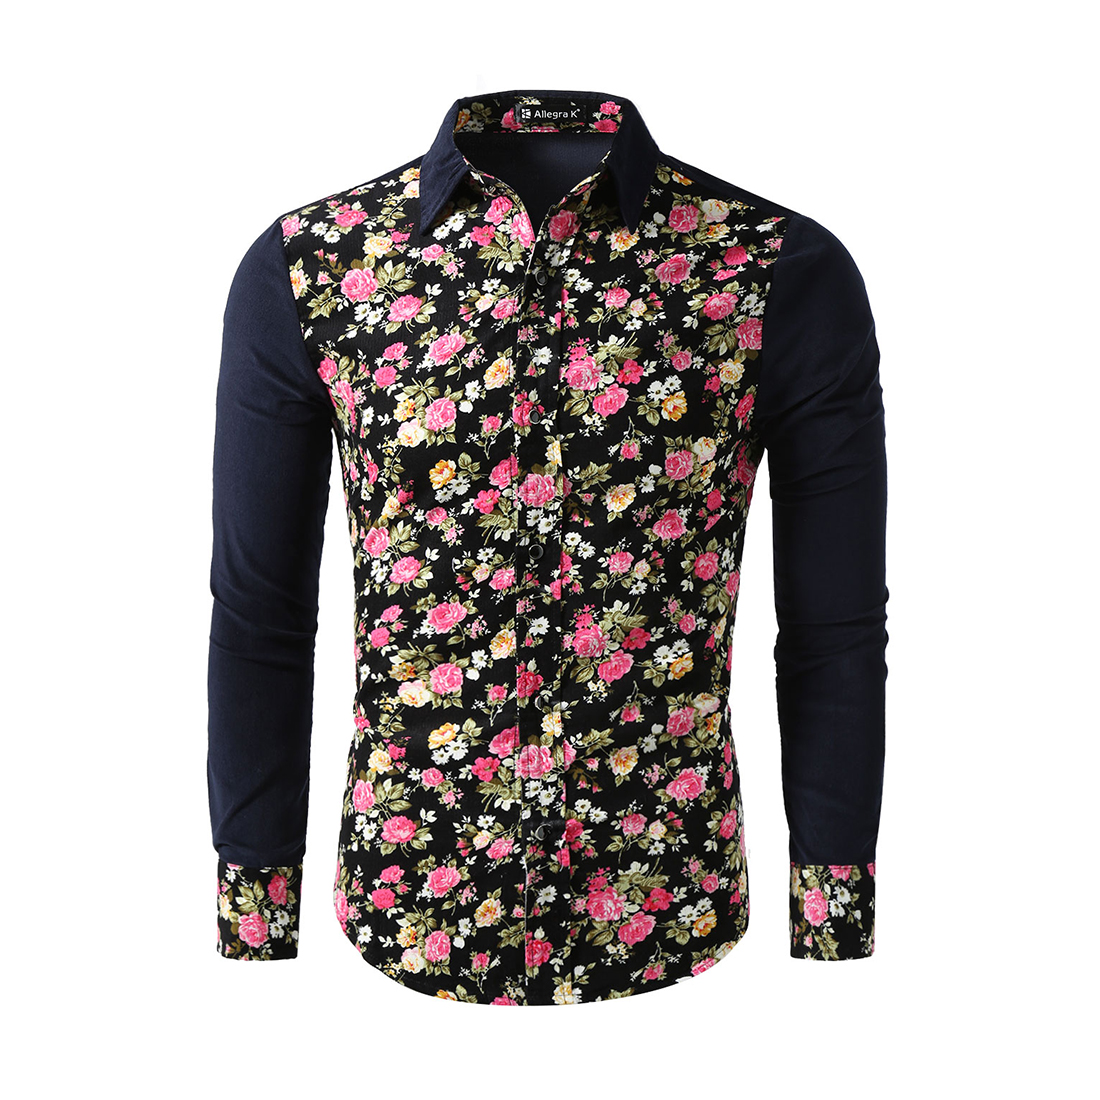 Unique Bargains Men's Floral Print Long Sleeves Color Block Corduroy Shirts Black (Size S / 34)